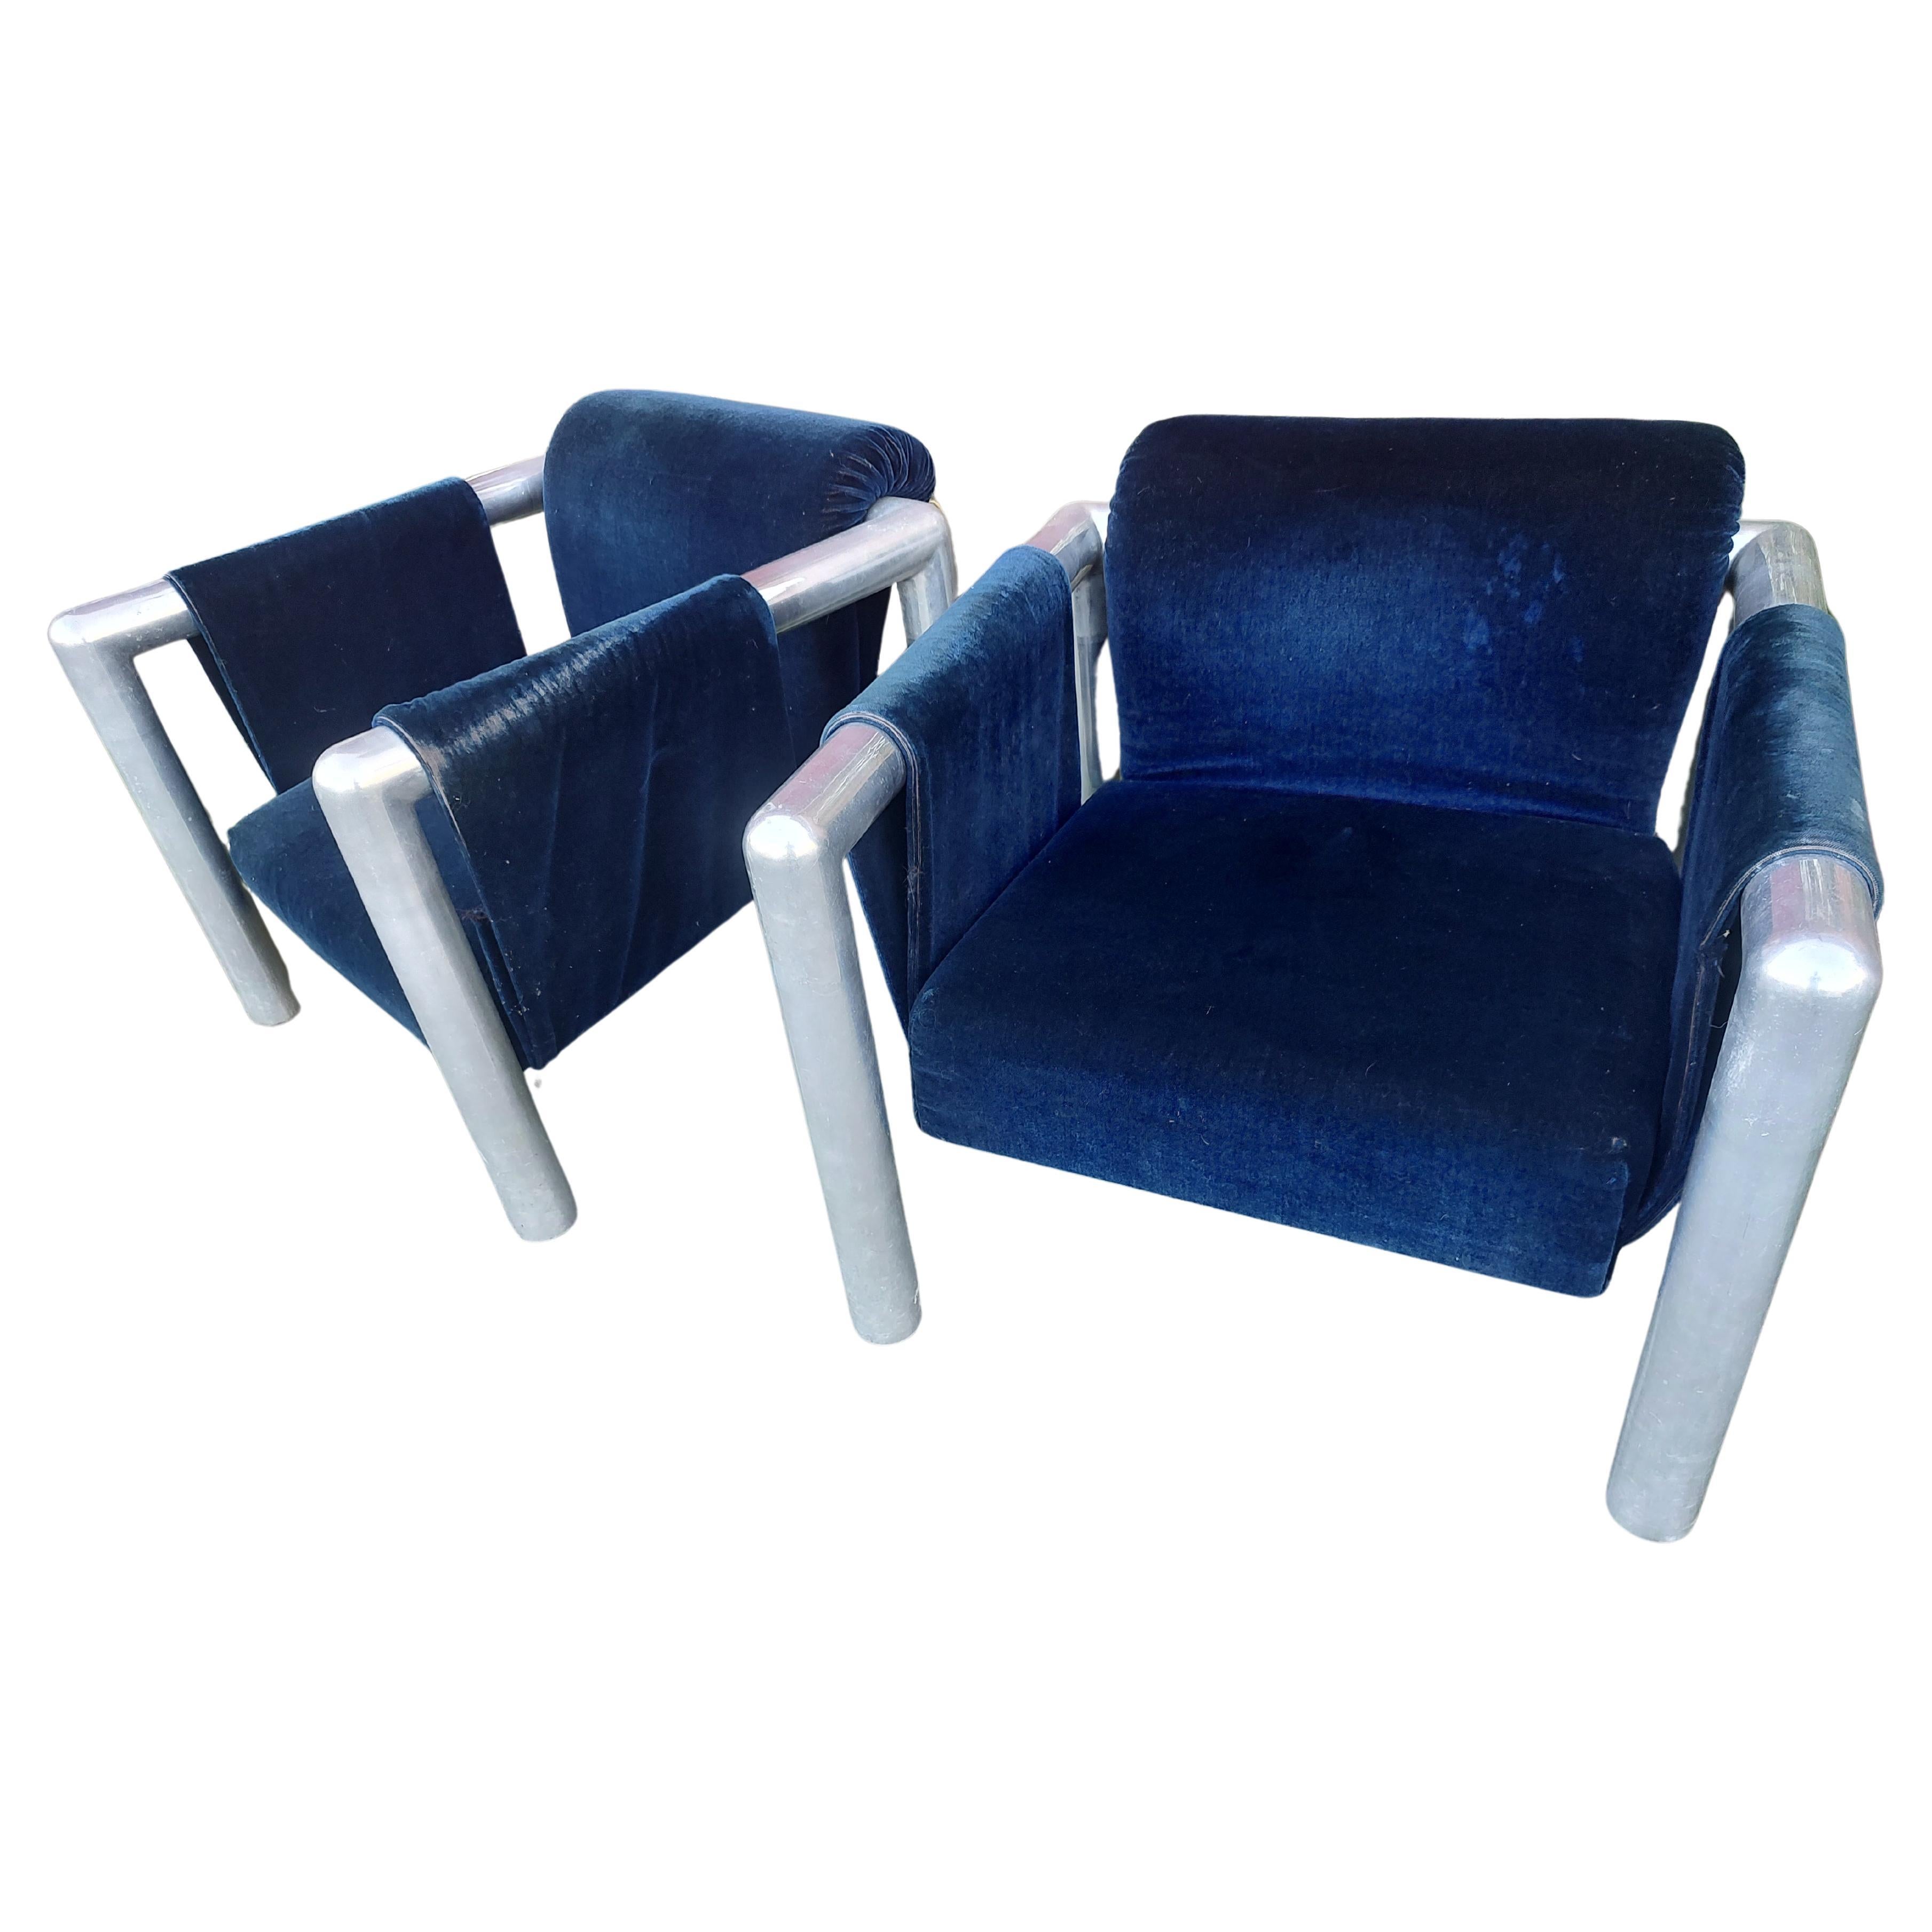 Fabuleuse paire de chaises à bretelles par John Mascheroni. Le tissu est d'origine et en mauvais état, déchiré donc à refaire. Je dois dire que le velours bleu foncé convient très bien à ces chaises. L'aluminium est génial, grand et très solide. Il